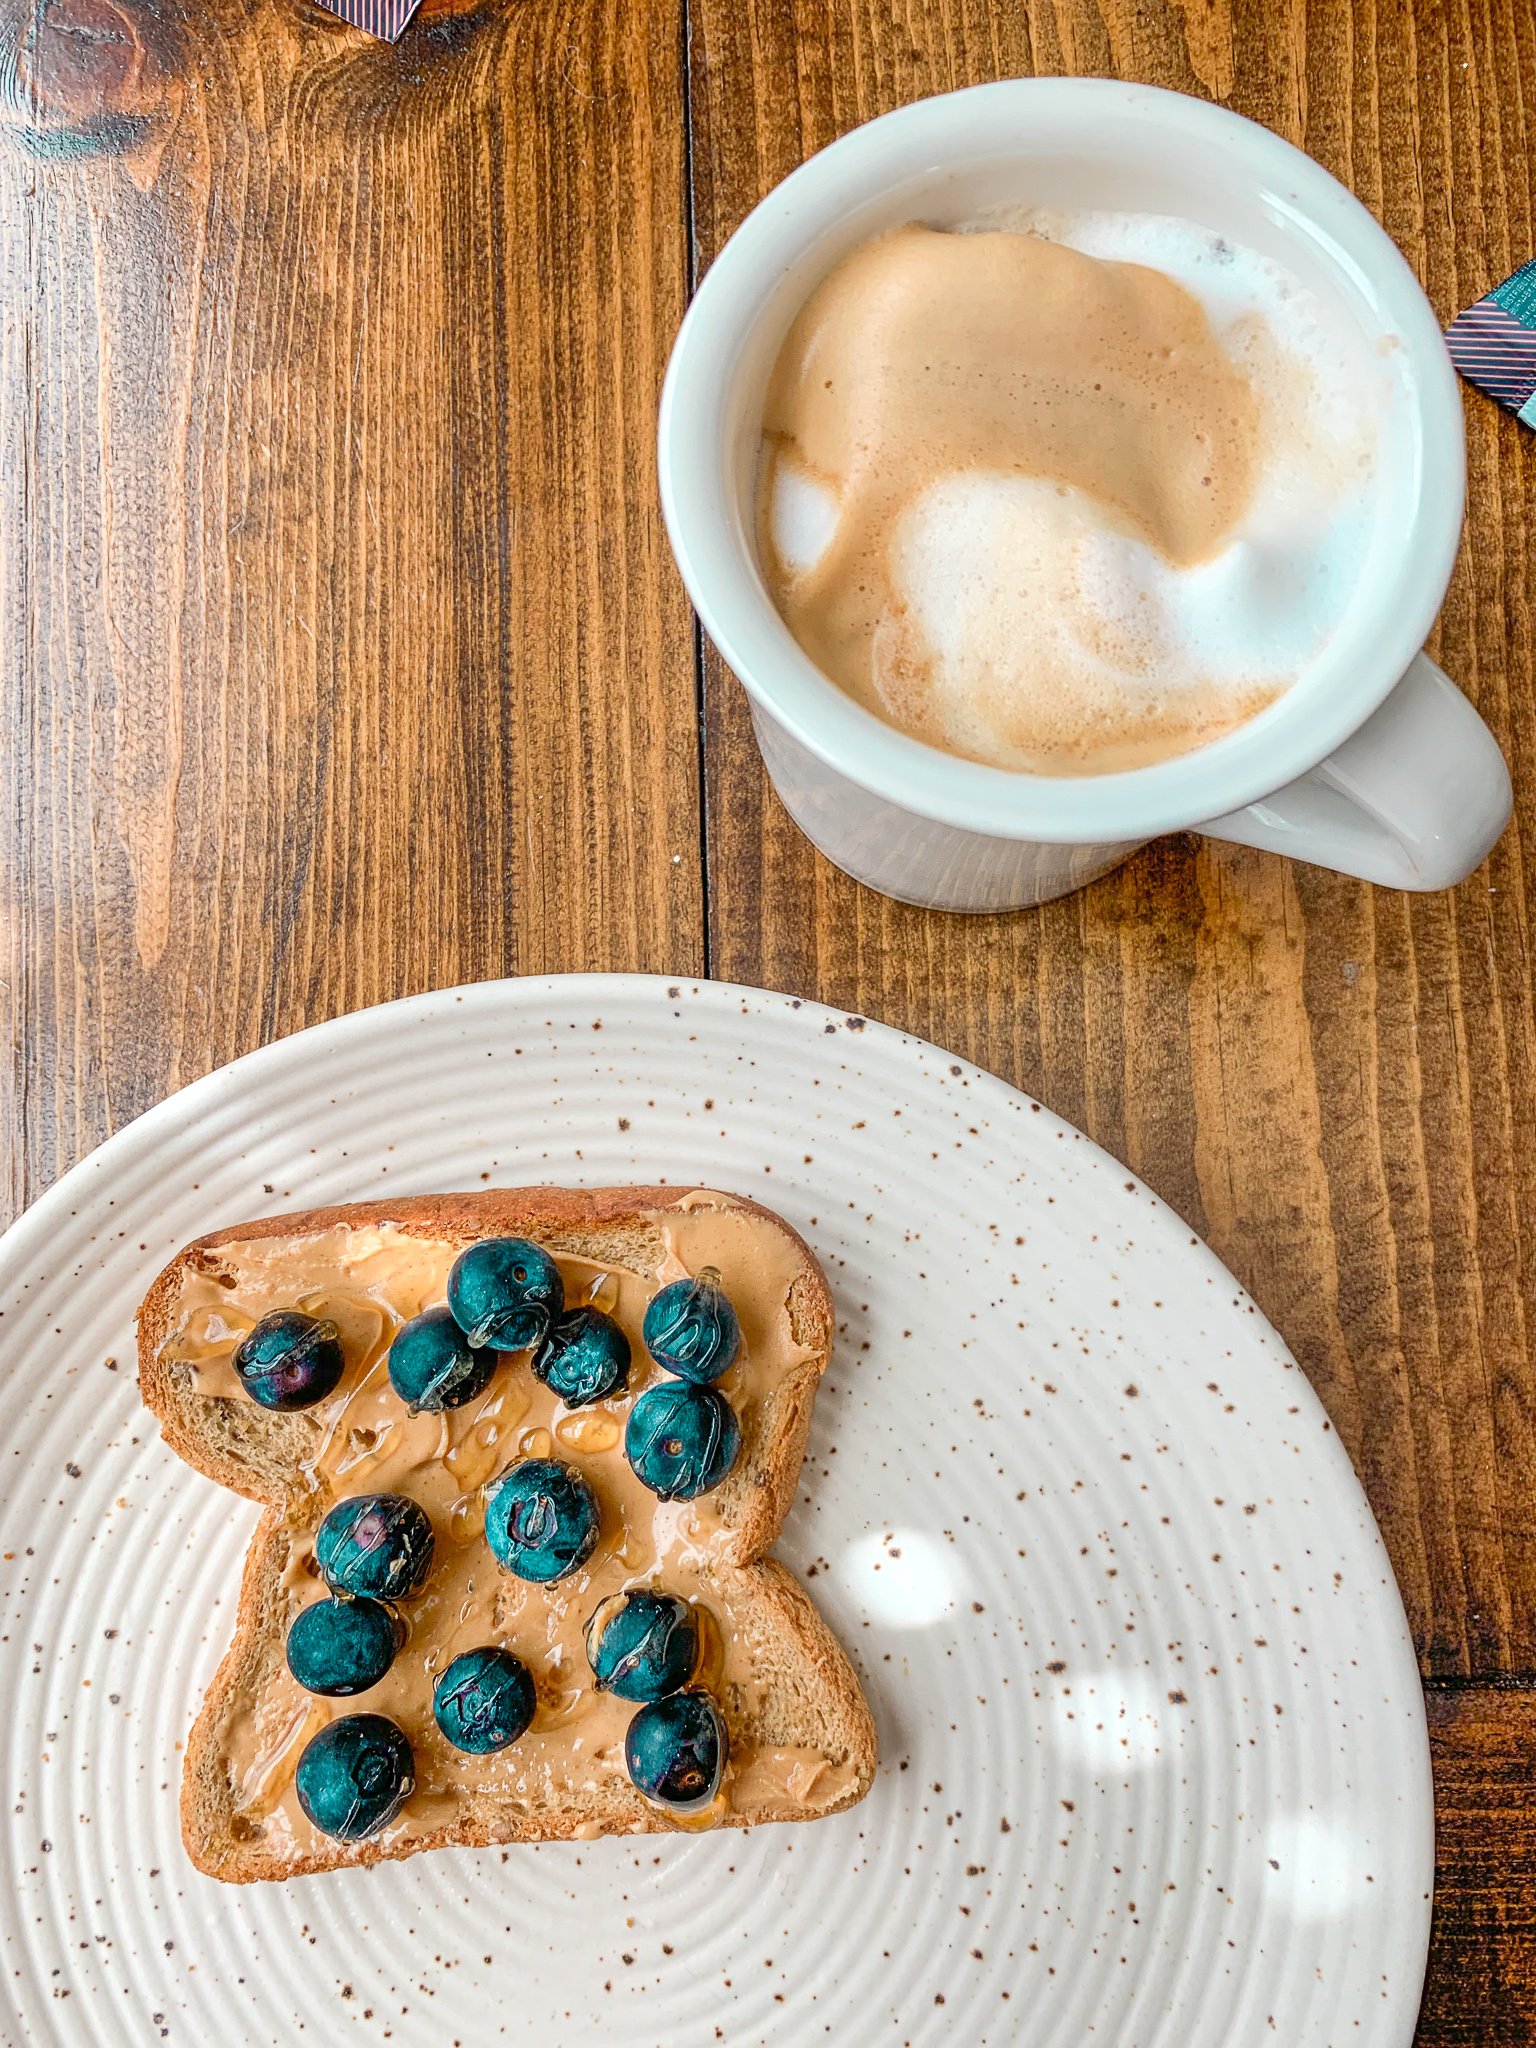 peanut butter gluten free toast honey blueberries almond milk cappuccino Nespresso machine breakfast